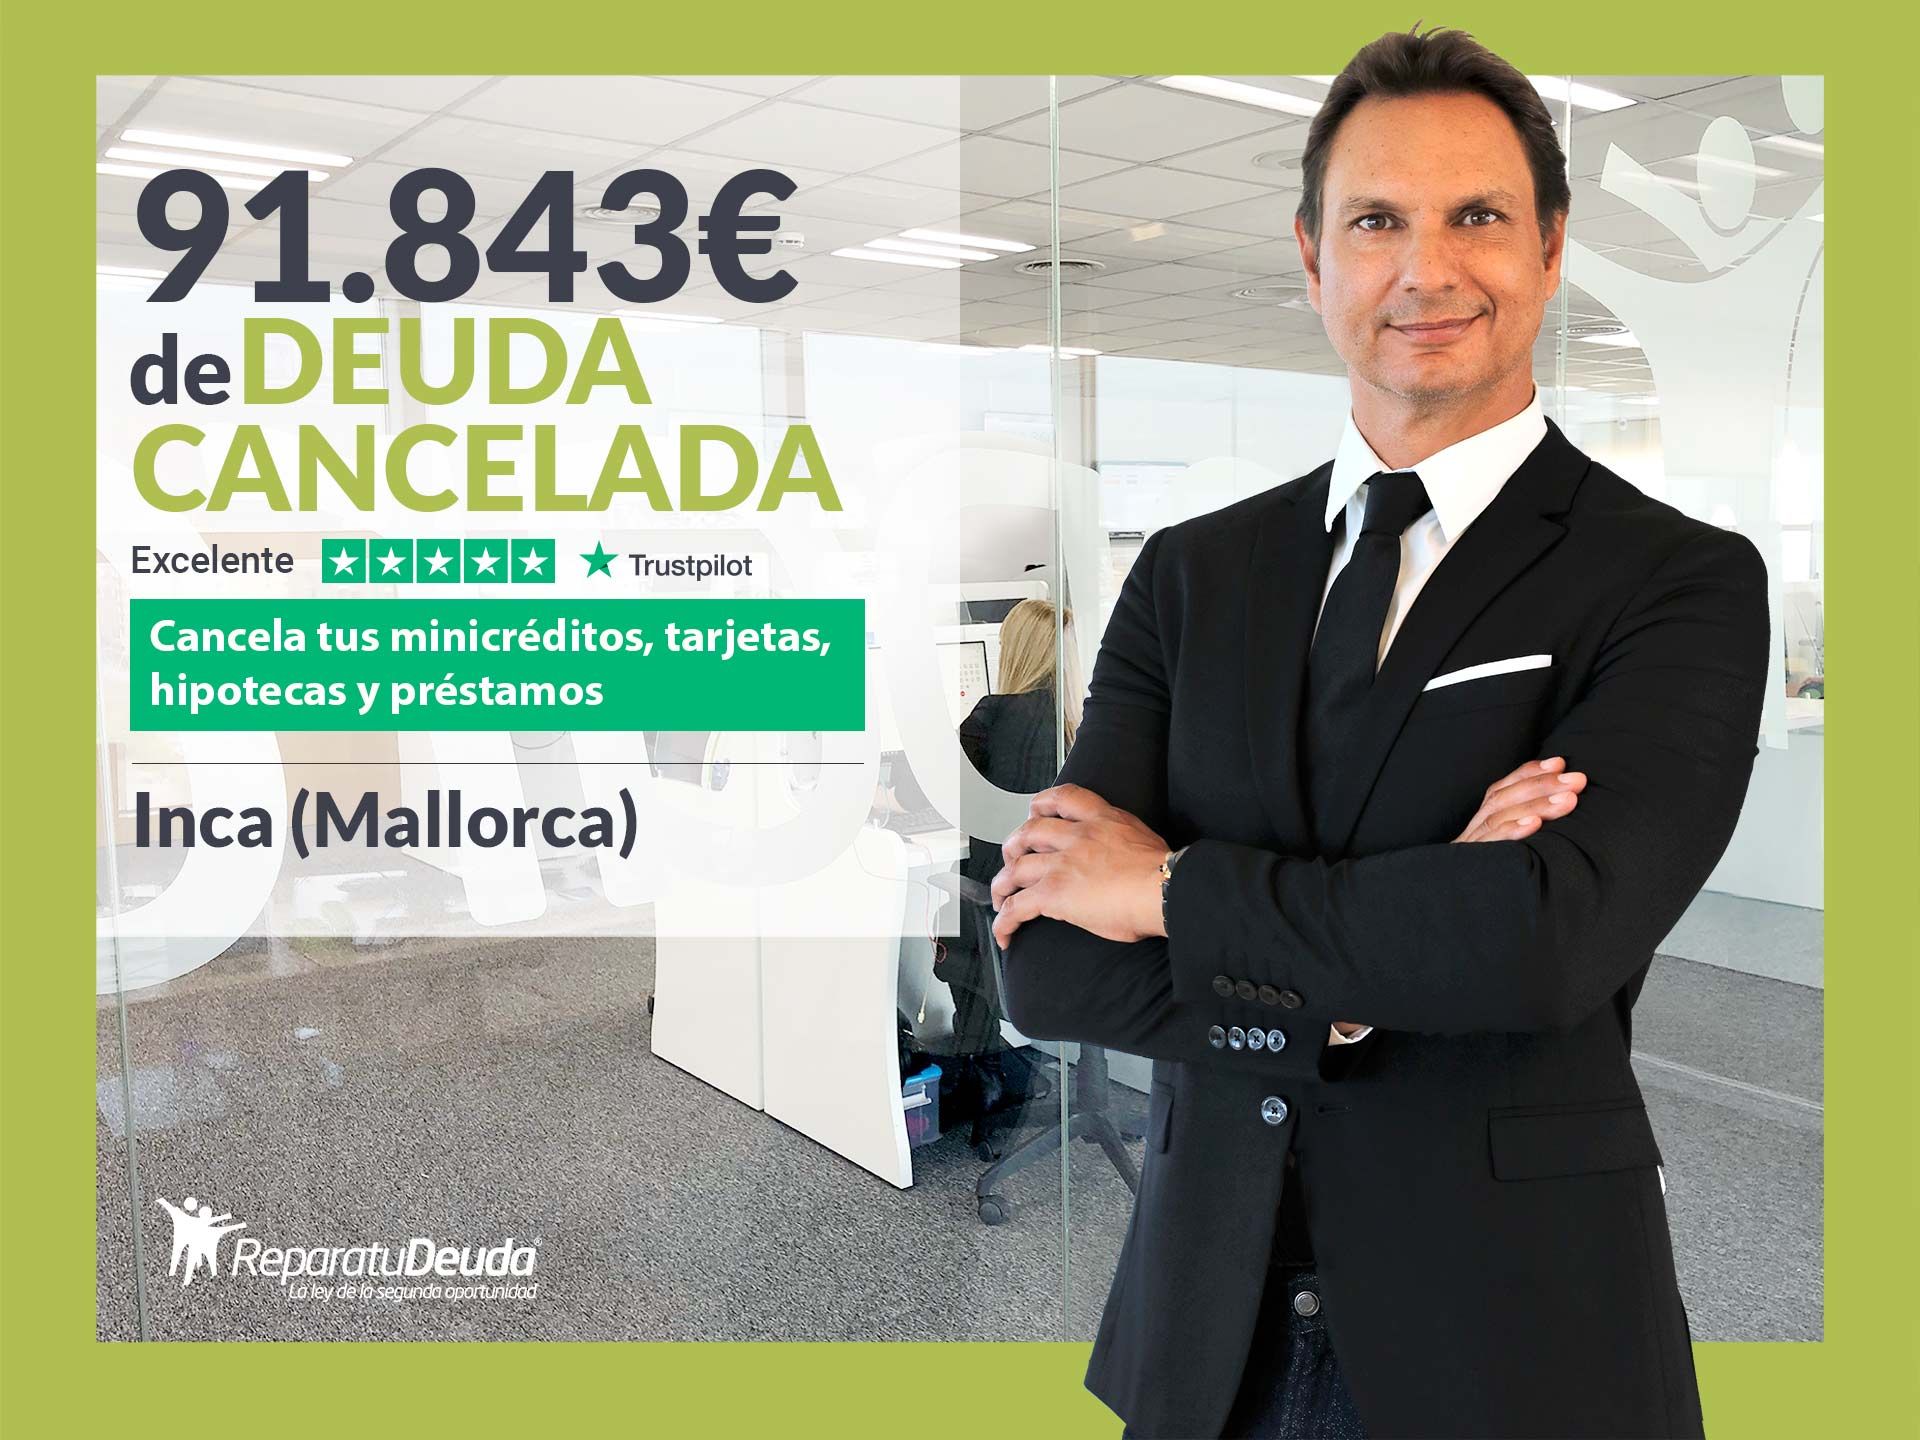 Repara tu Deuda Abogados cancela 91.843? en Inca (Mallorca) con la Ley de Segunda Oportunidad